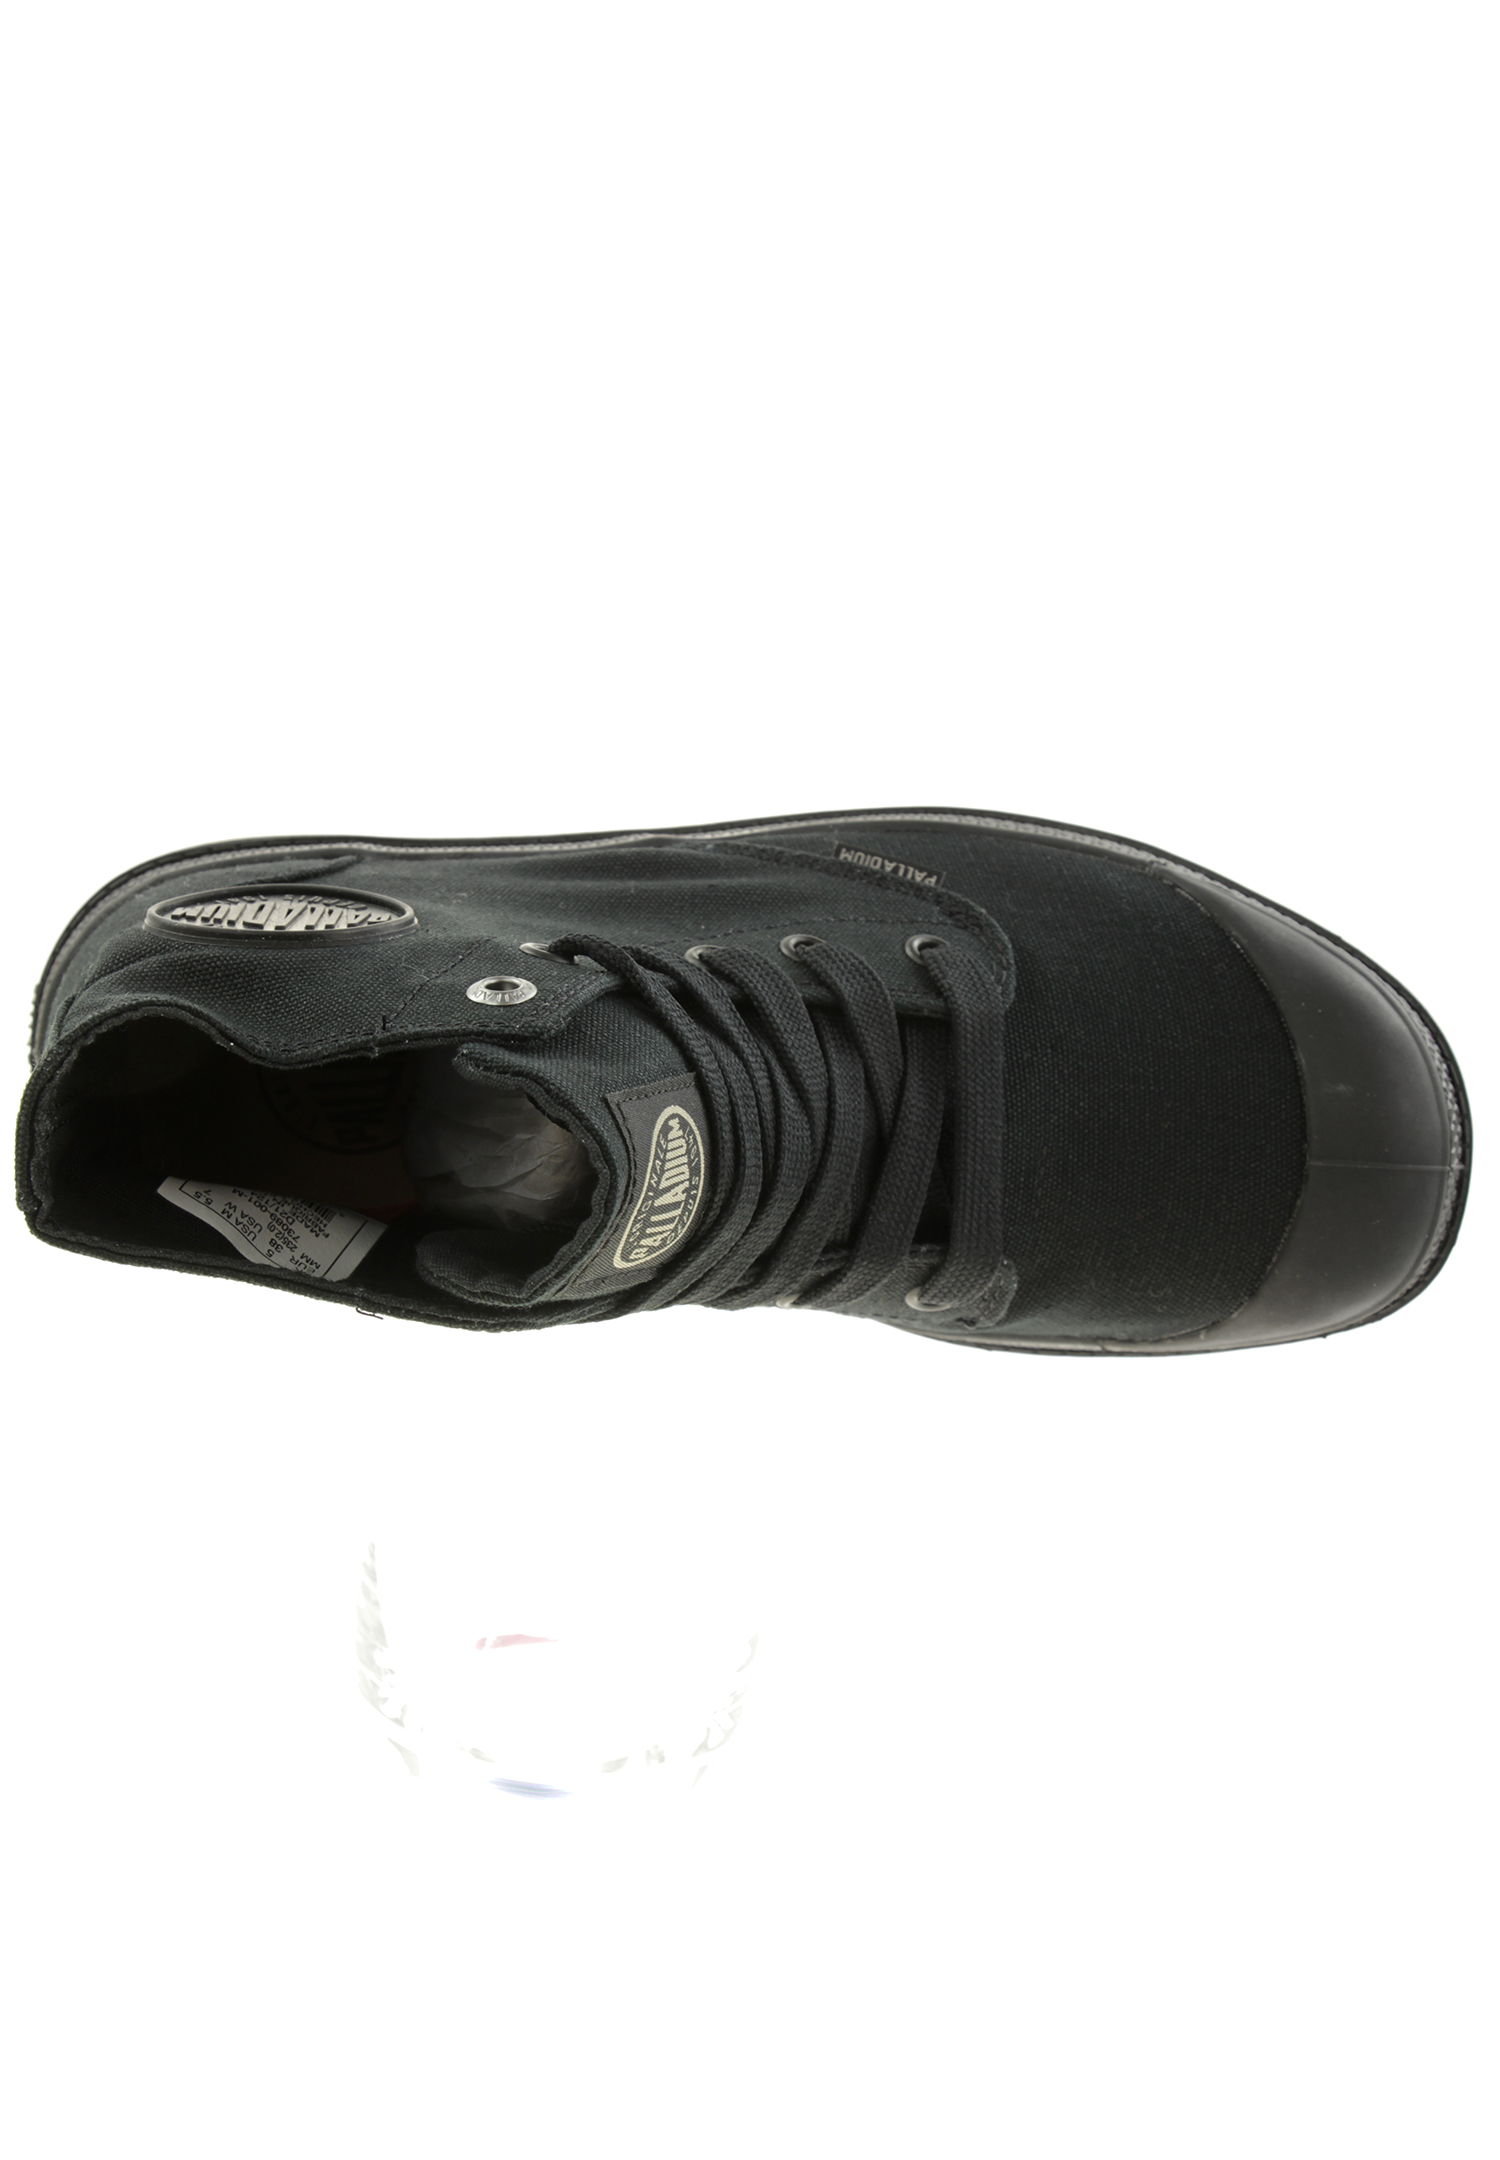 PALLADIUM Unisex Pampa Hi Mono Chrome Boots Stiefelette 73089 Schwarz